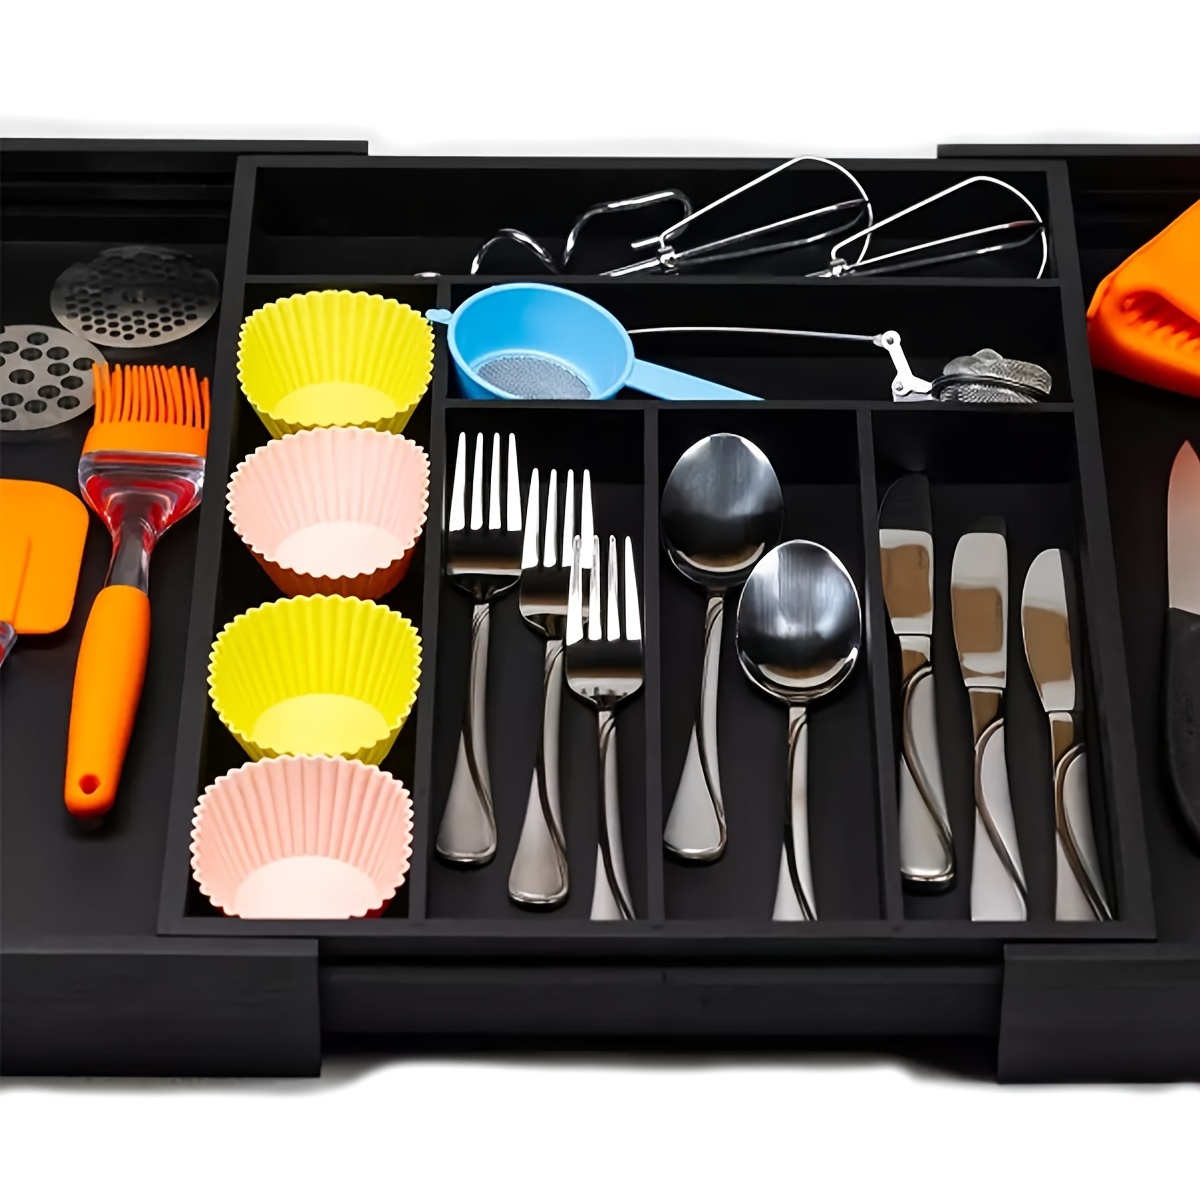 Organizador de cajones de cocina - Organizador de cubiertos  expandible/soporte para utensilios y bandeja para cubiertos con divisores  de cajones para